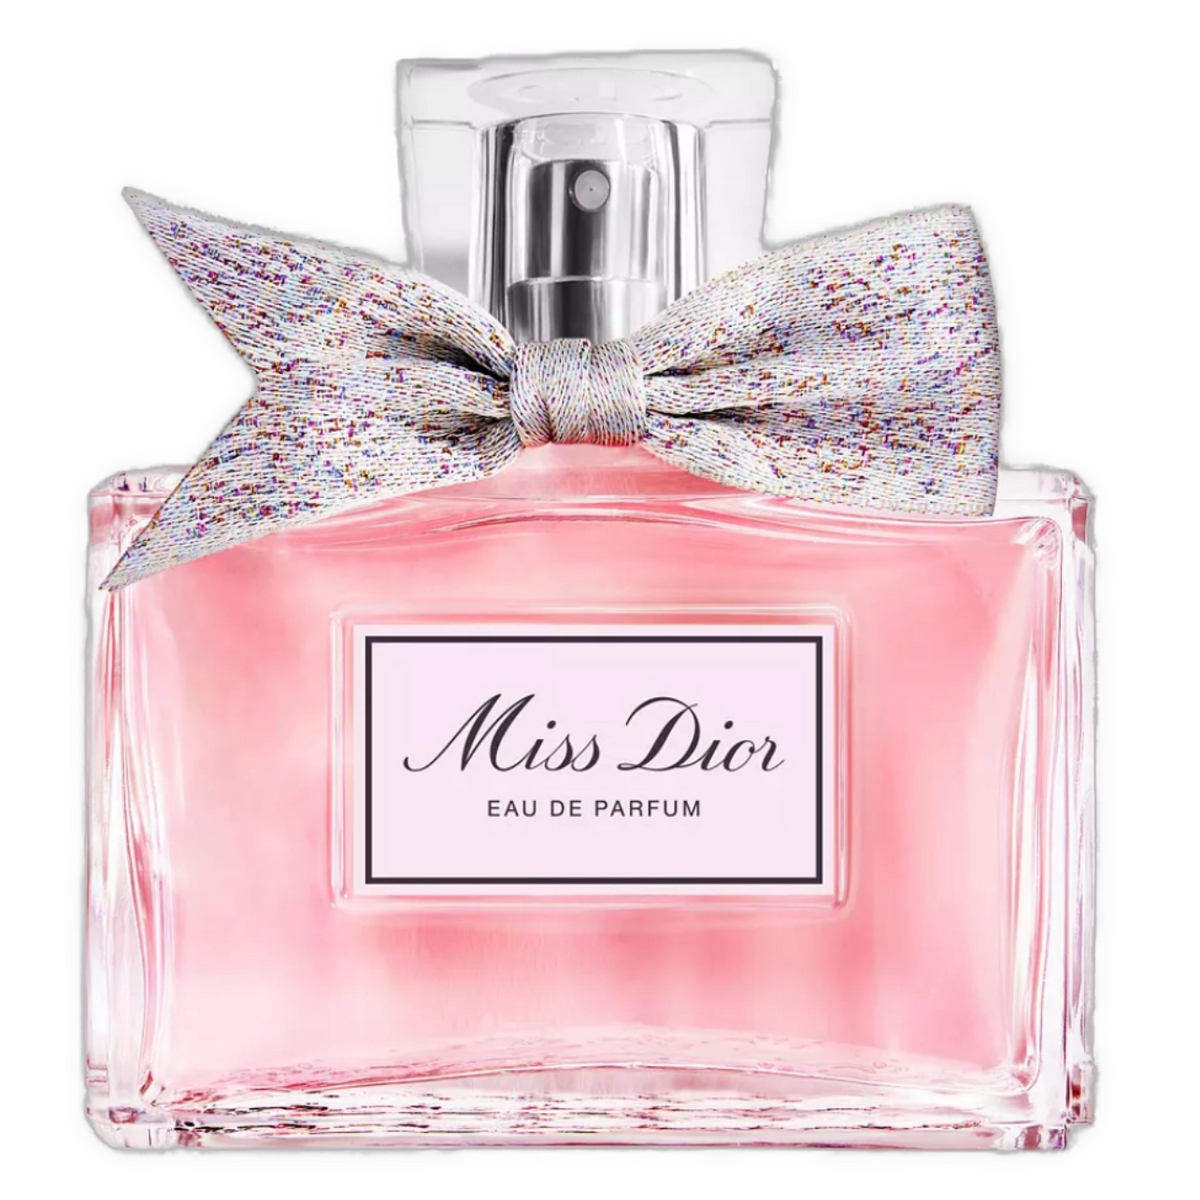 Miss Dior - Eau de Parfum